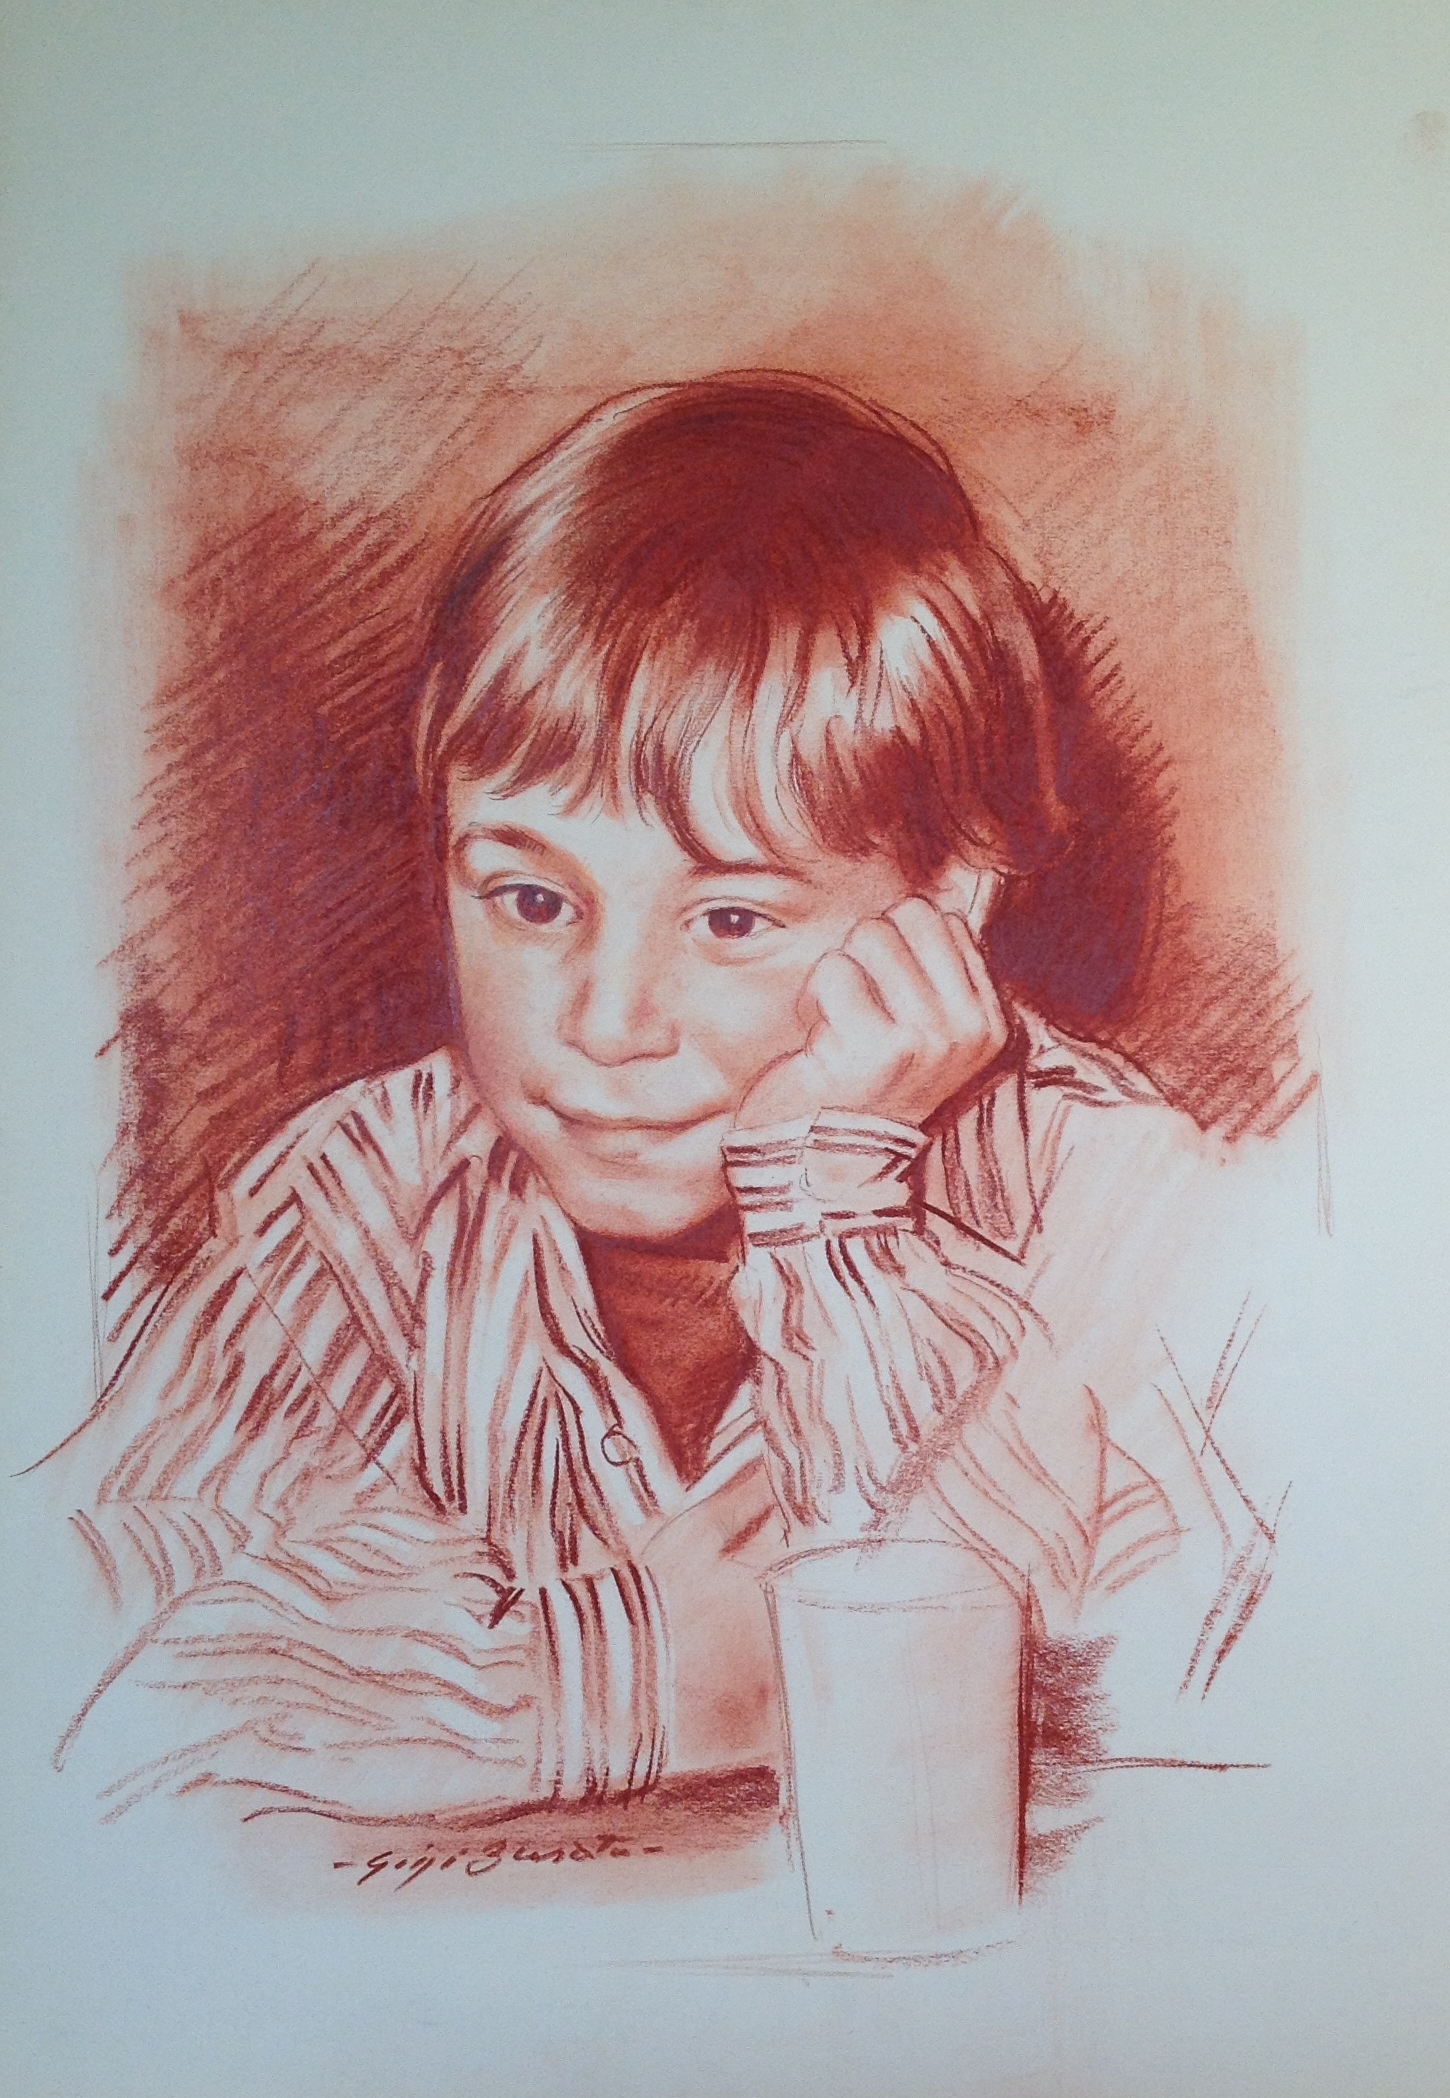 Colazione ritratto di bambino con il bicchiere del latte di Gigi Busato disegno a sanguigna su carta collezione difamiglia